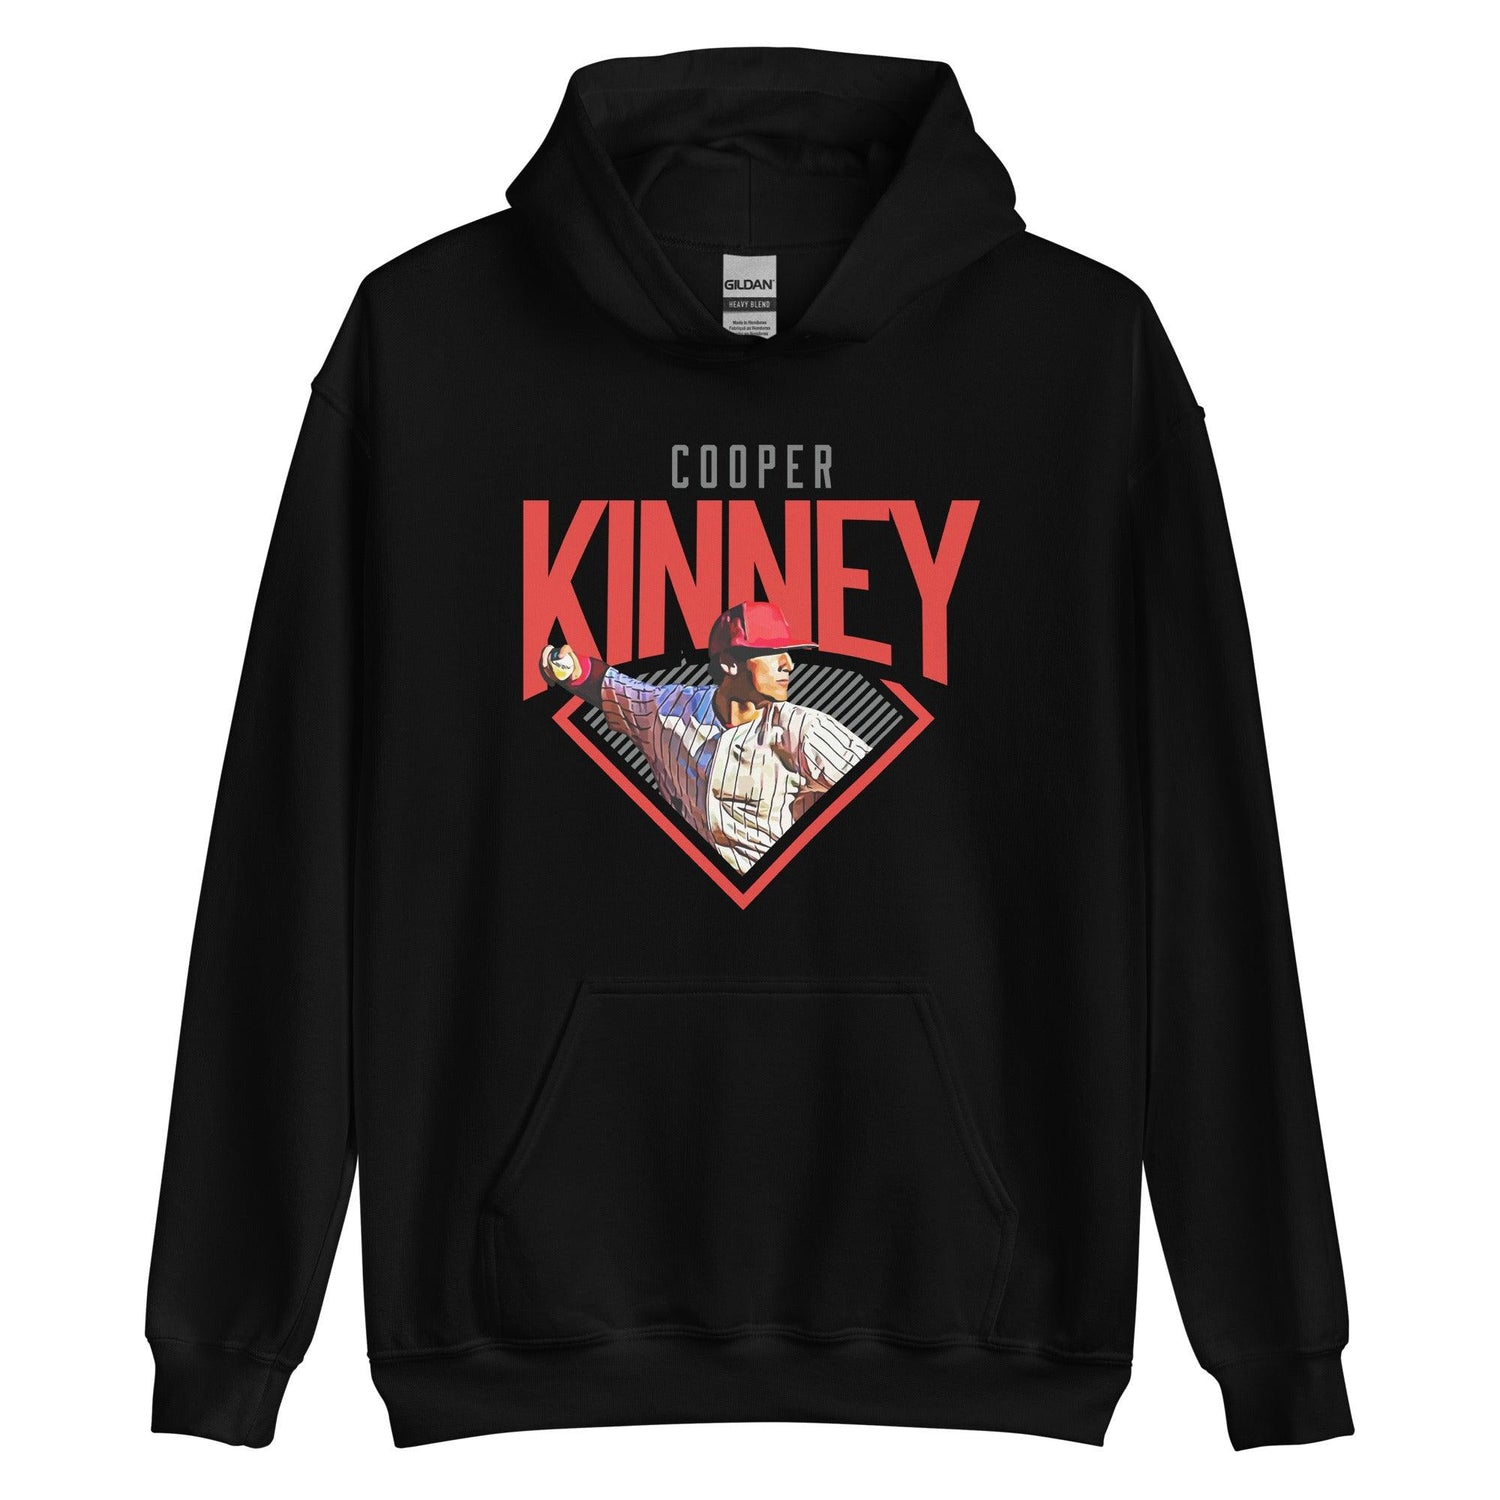 Cooper Kinney "Diamond" Hoodie - Fan Arch